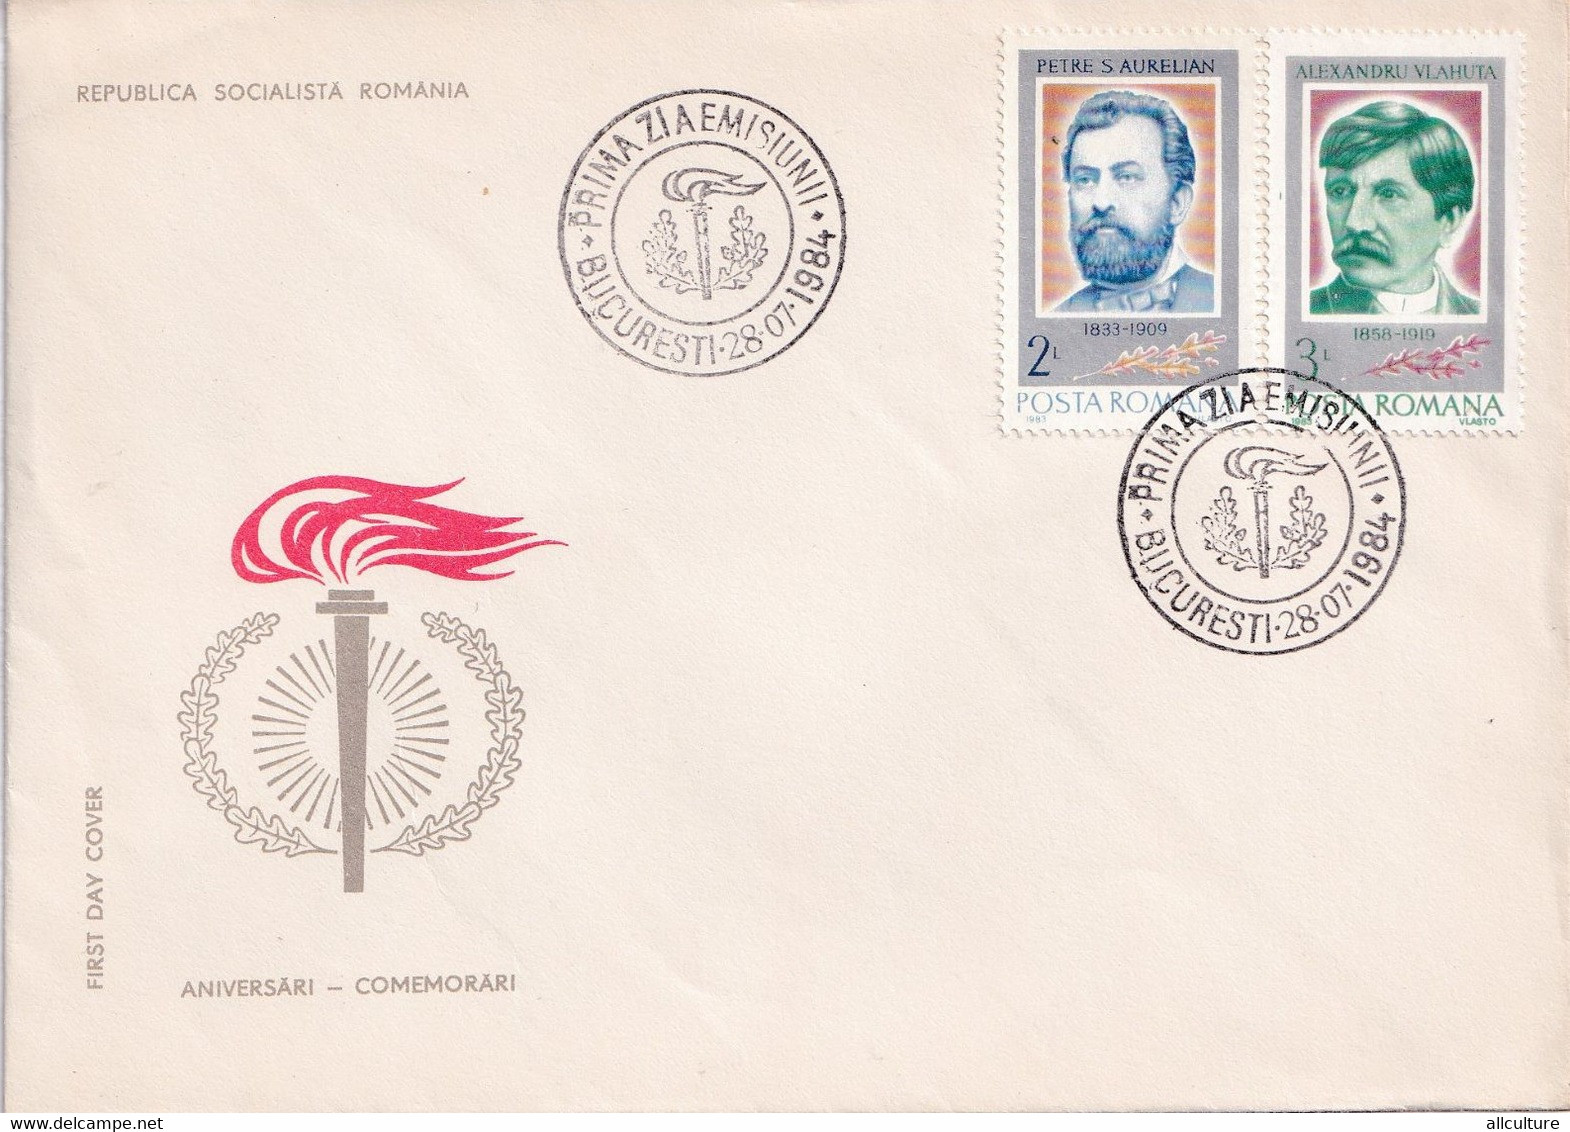 A2651 - Aniversari-Comemorari Republica Socialista Romania, Bucuresti 28 Iulie 1984  FDC - FDC